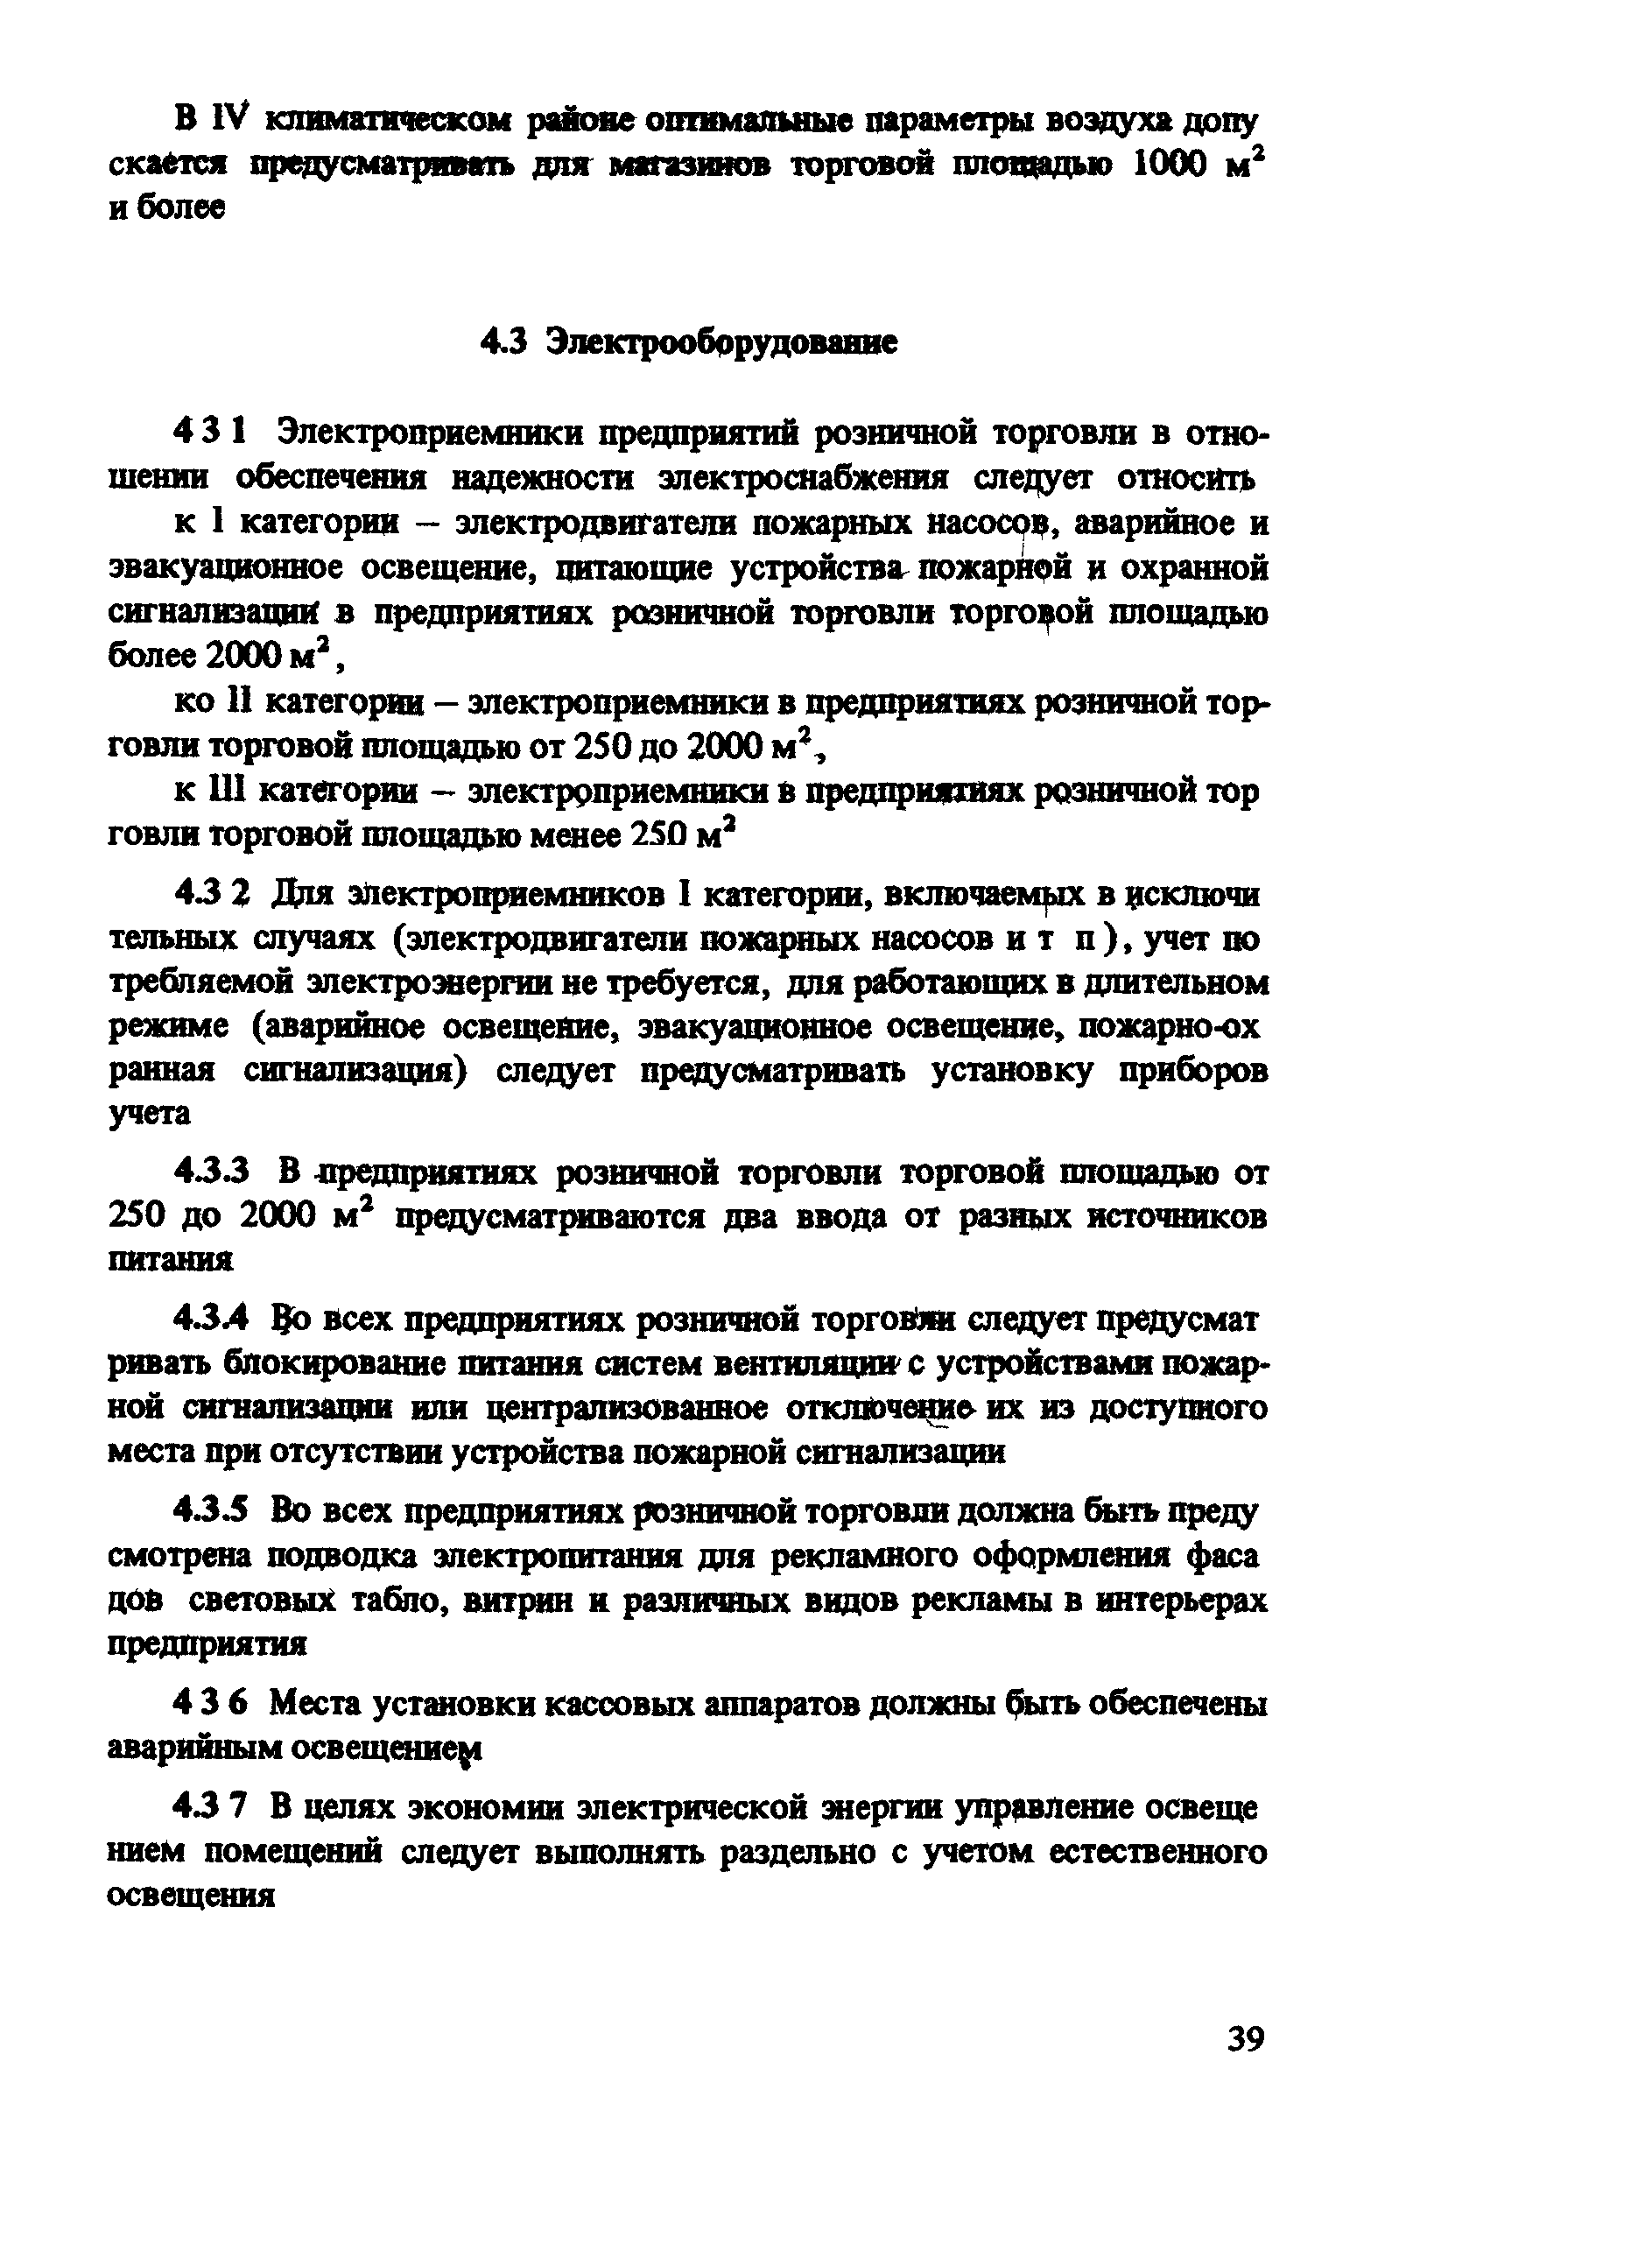 ВСН 54-87/Госгражданстрой